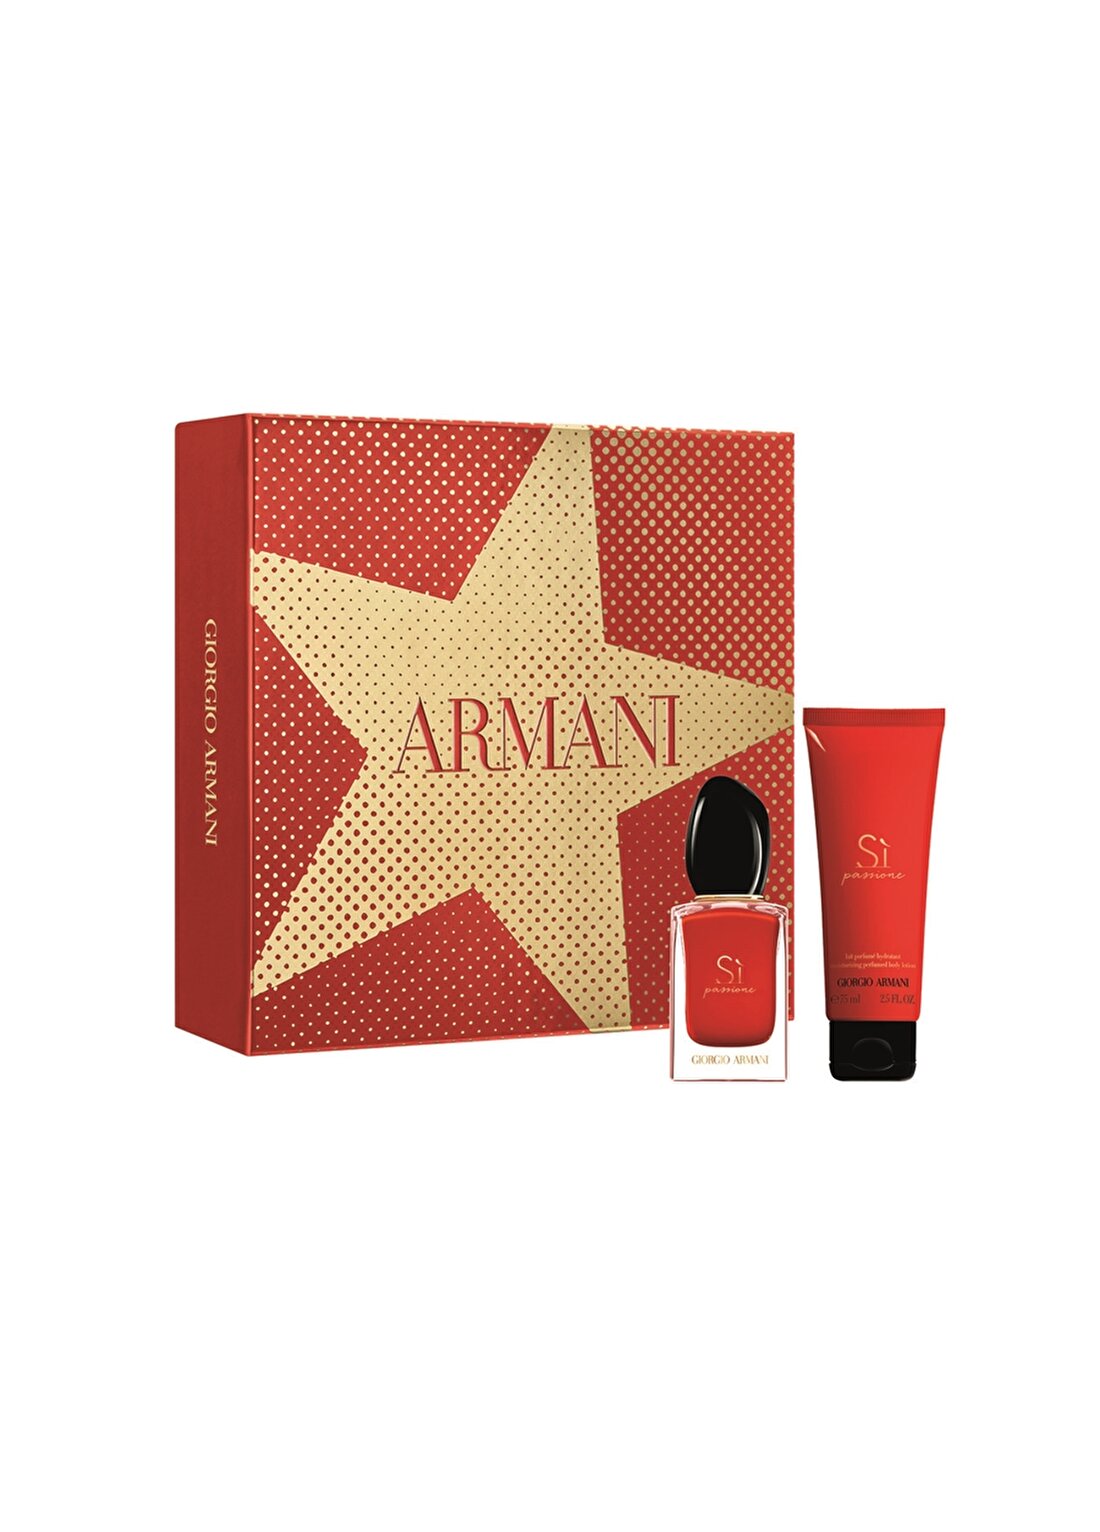 Armani Si Passione 30 + 75 Ml Parfüm Set